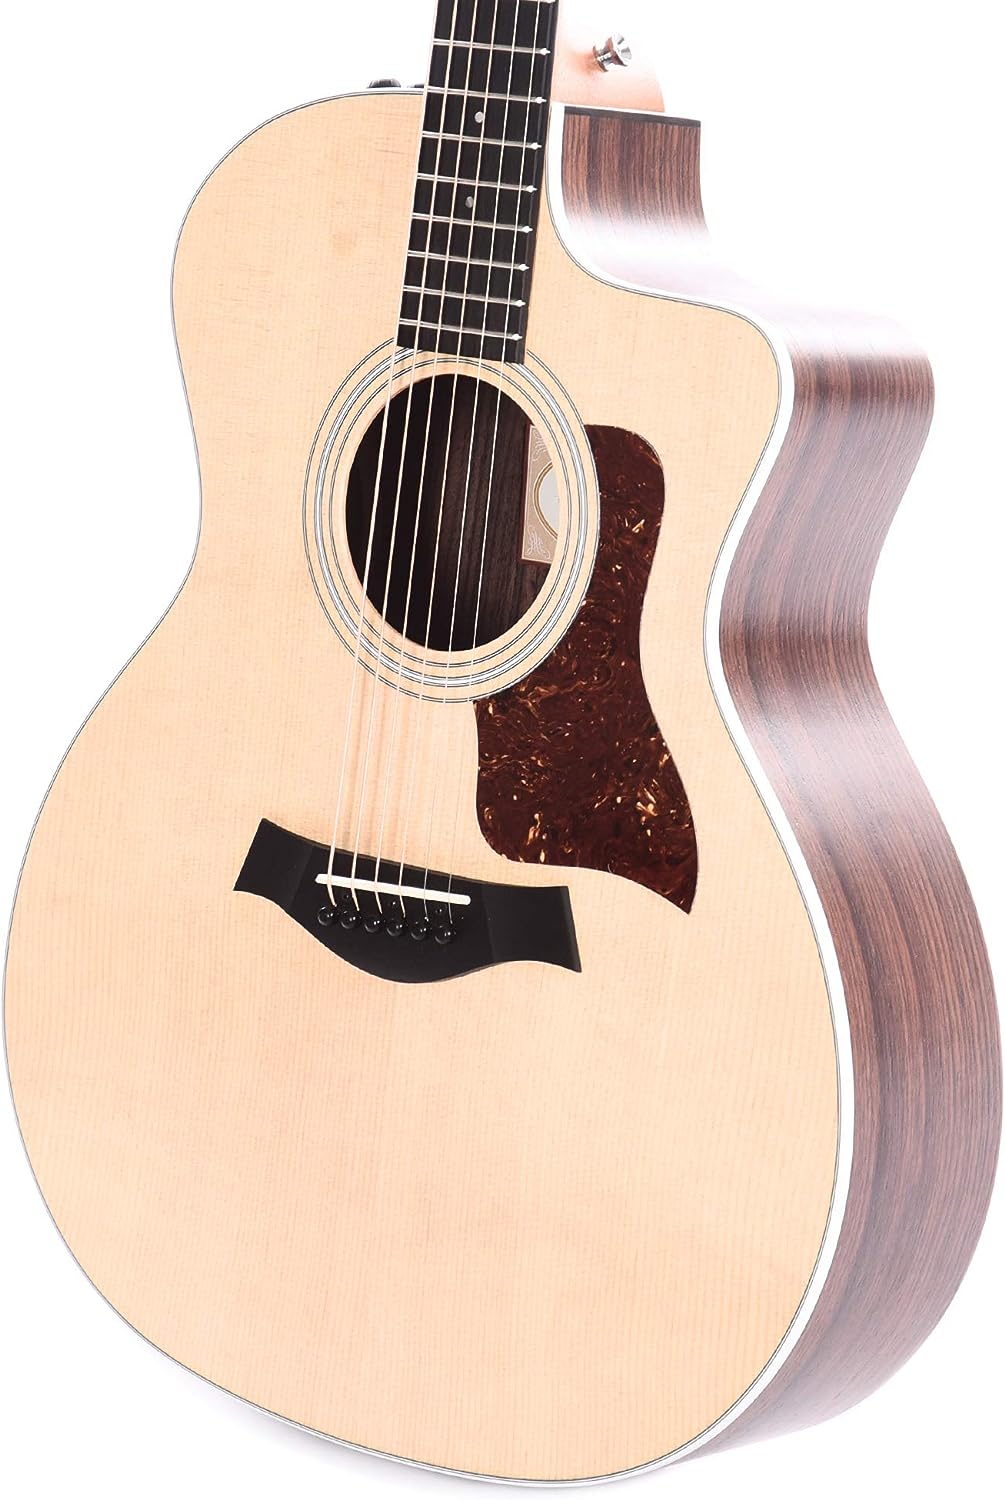 Taylor 214ce Acoustic electric guitar w/bag